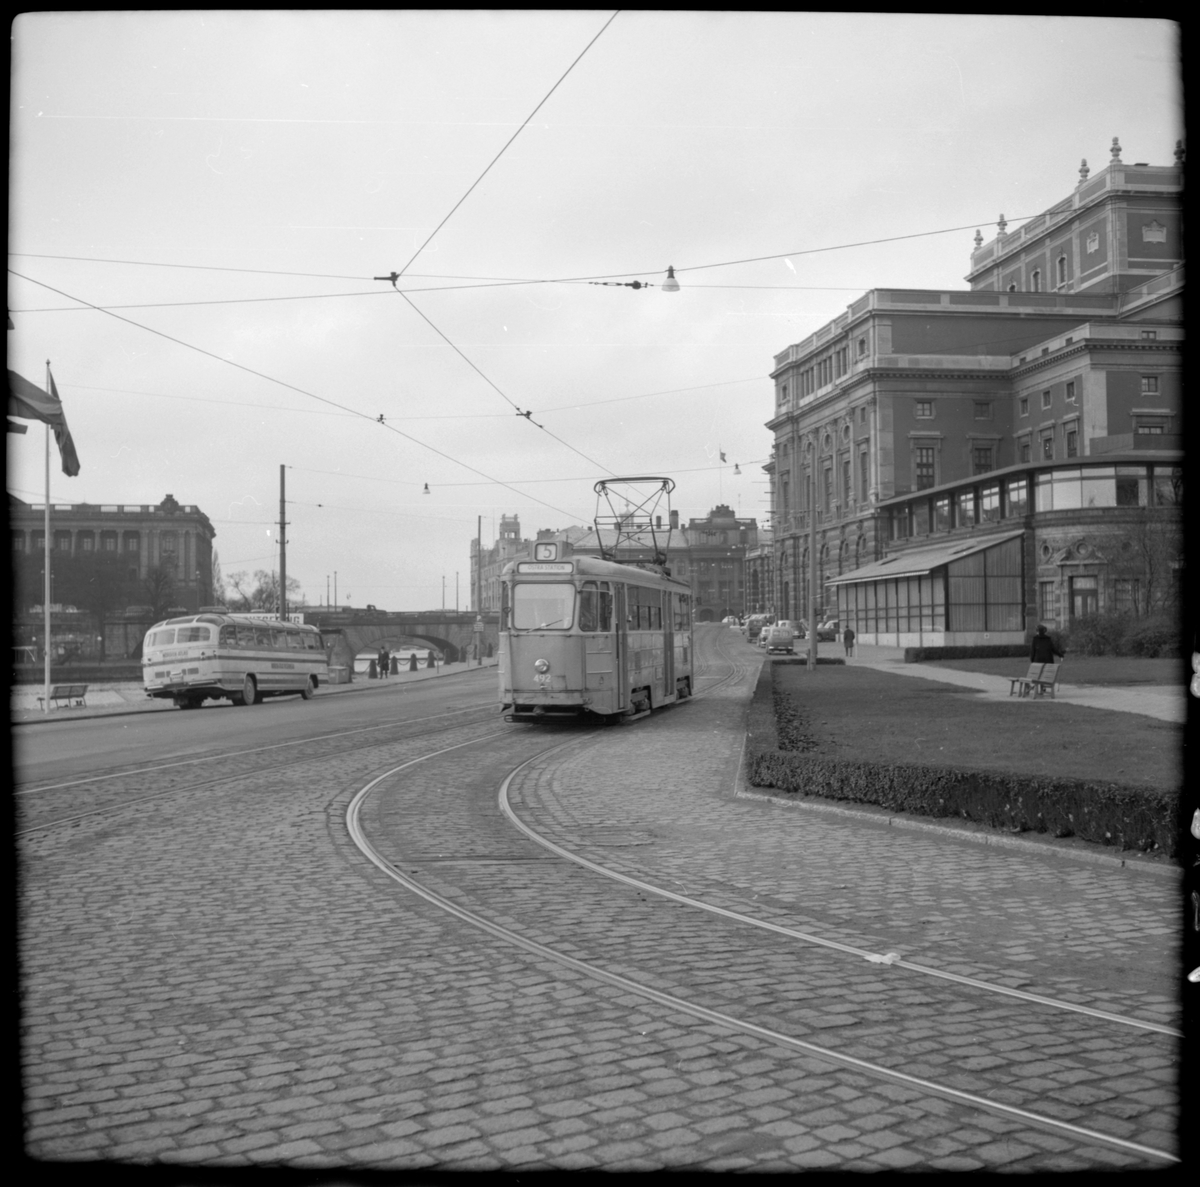 Aktiebolaget Stockholms Spårvägar, SS A27 492 "mustang" linje 5 Karlberg - Östra Station på Strömgatan - Karl XII:s torg.